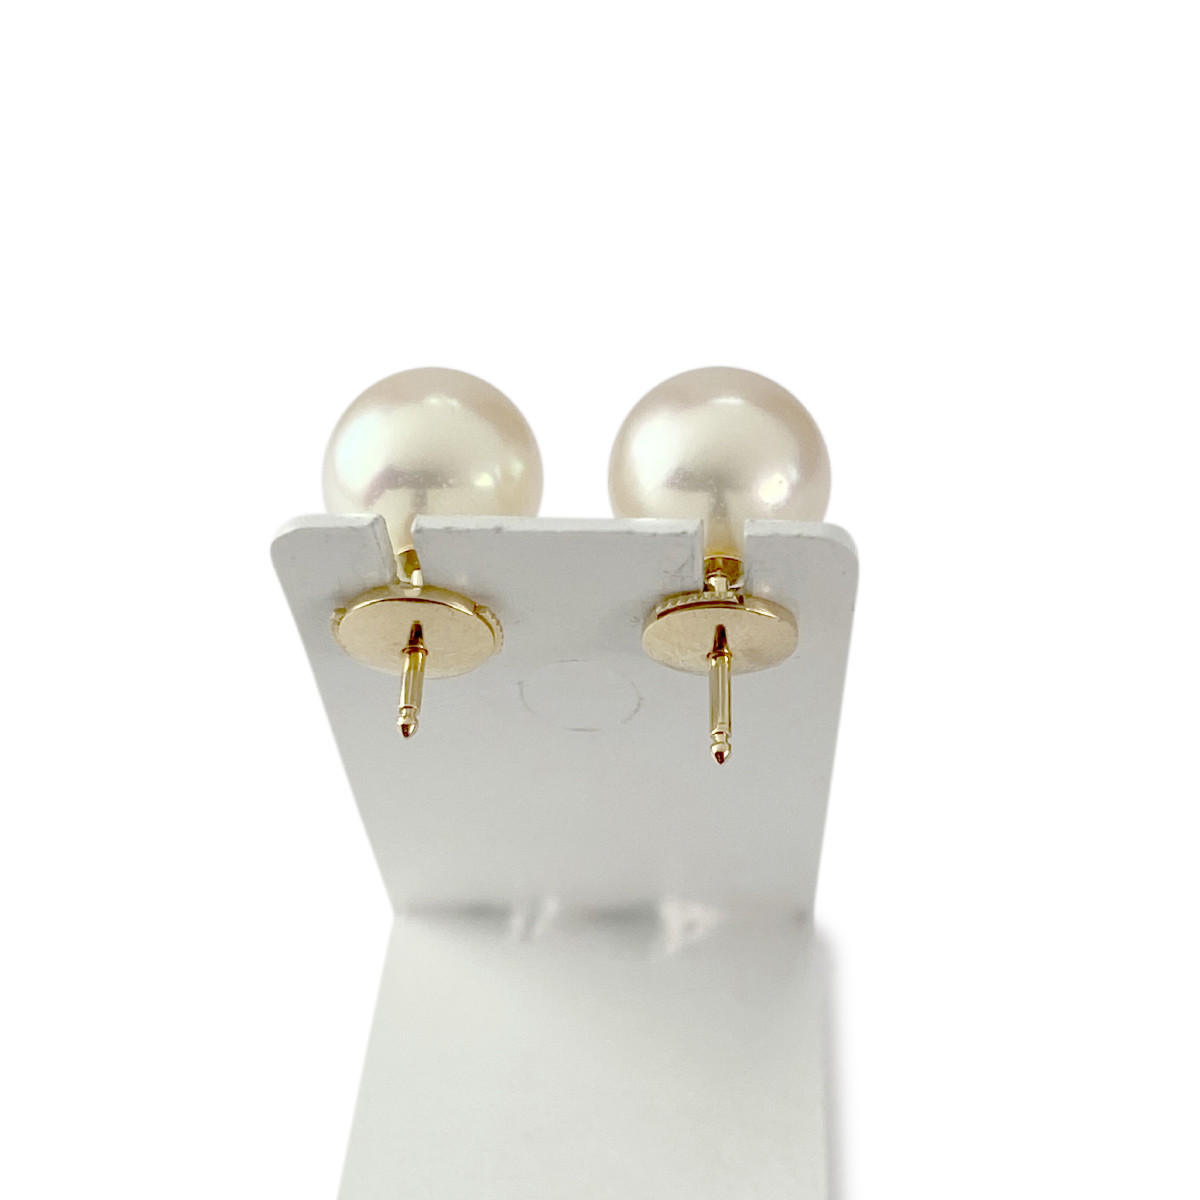 Boucles d'oreilles d'occasion or 750 jaune perles de culture - vue 3